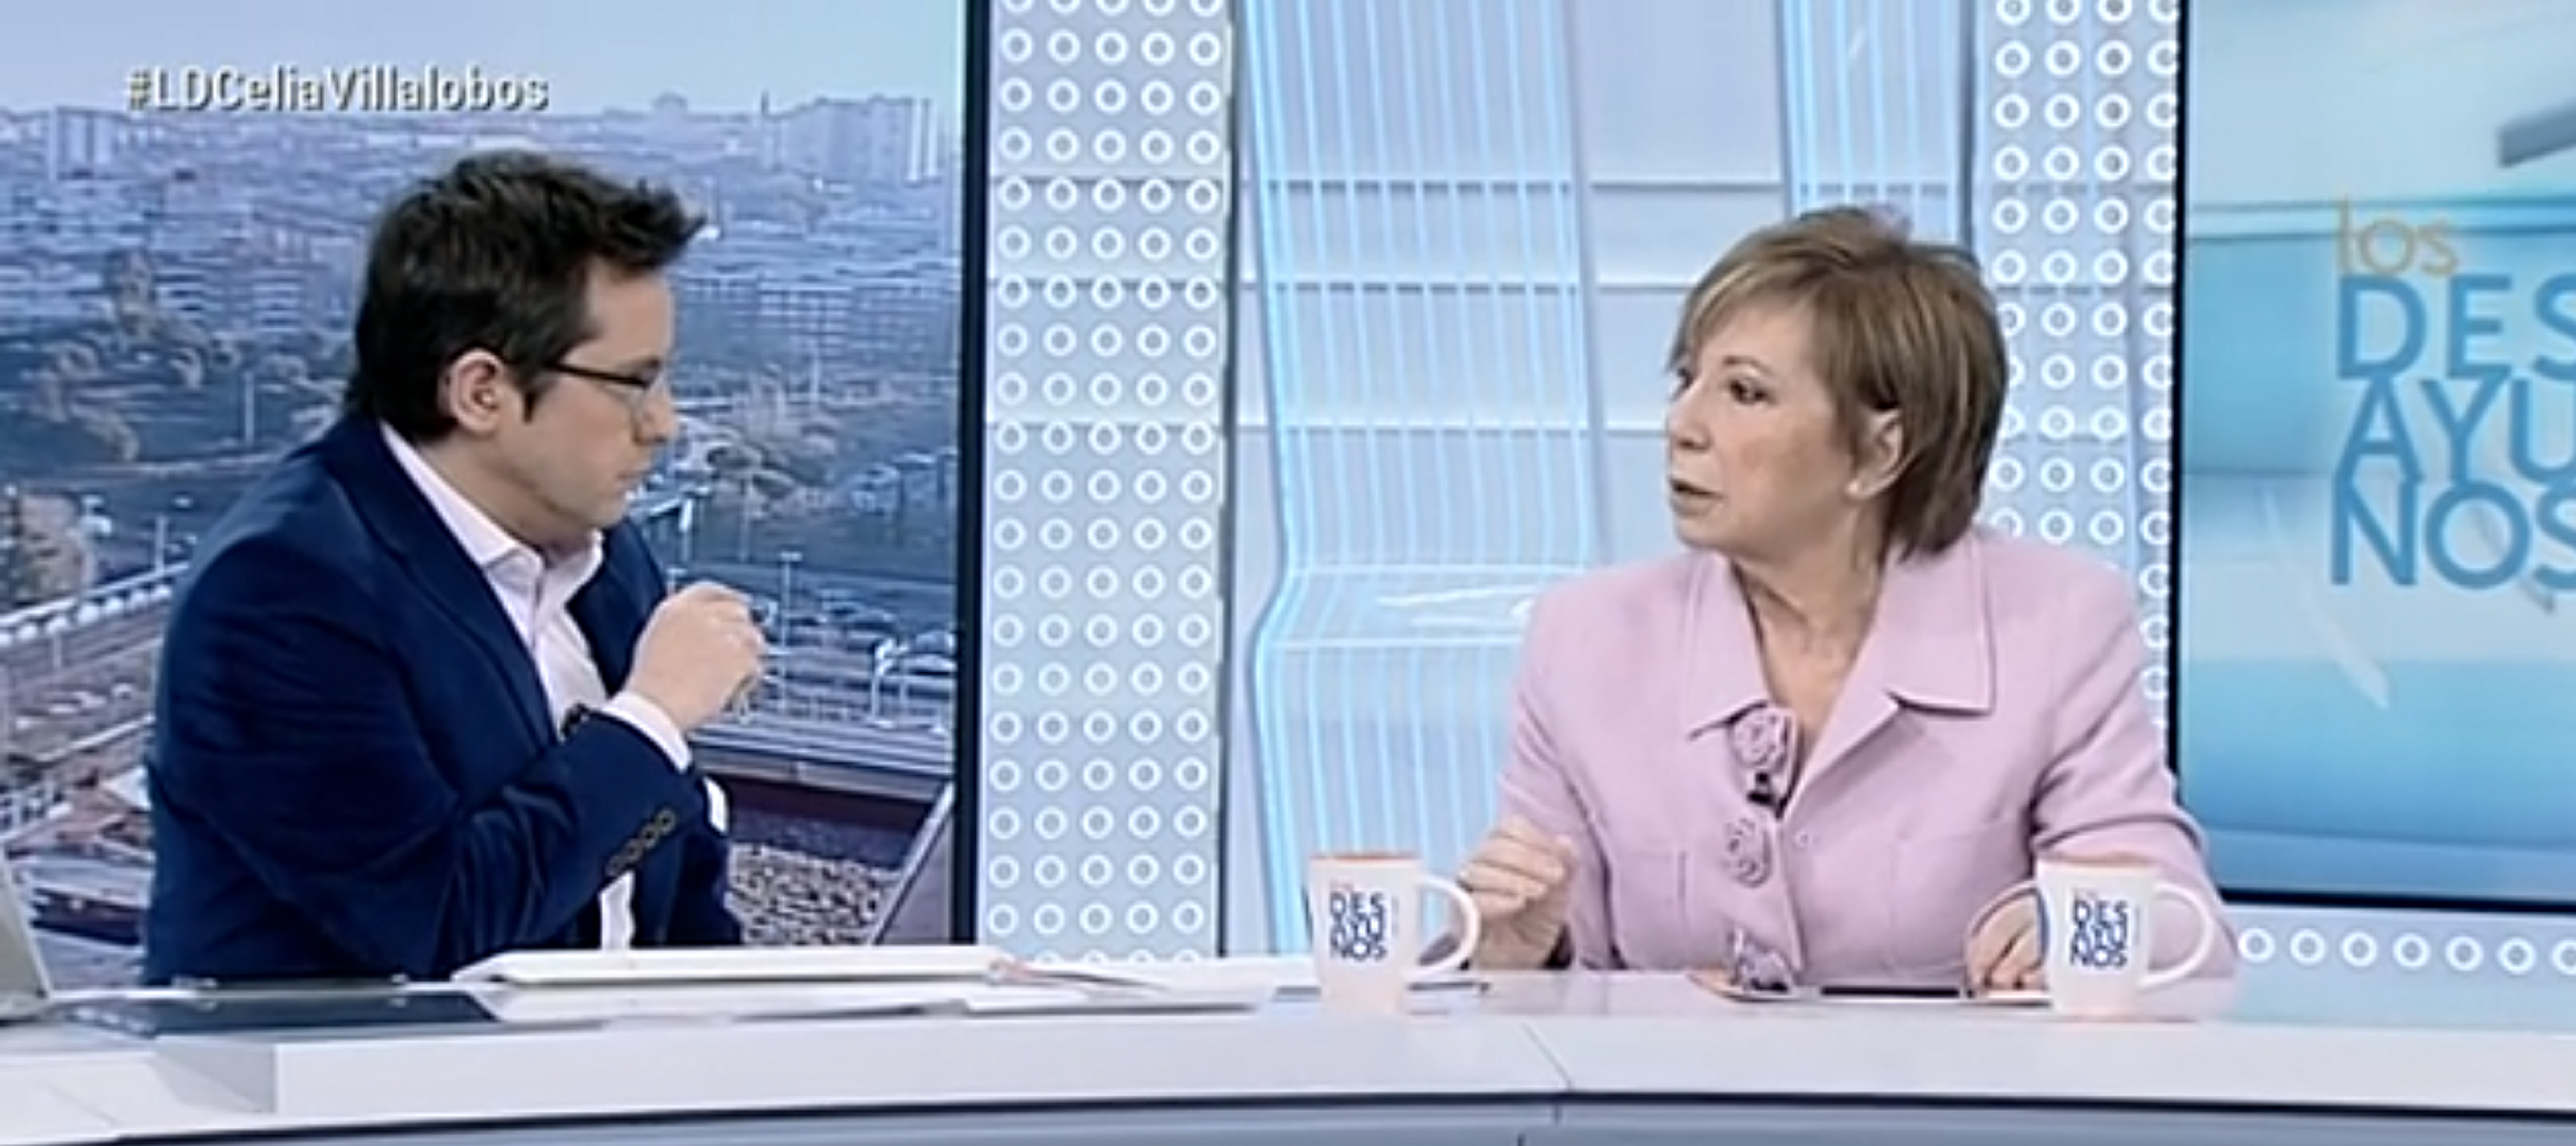 Celia Villalobos ataca els pensionistes a TVE i li plouen les garrotades